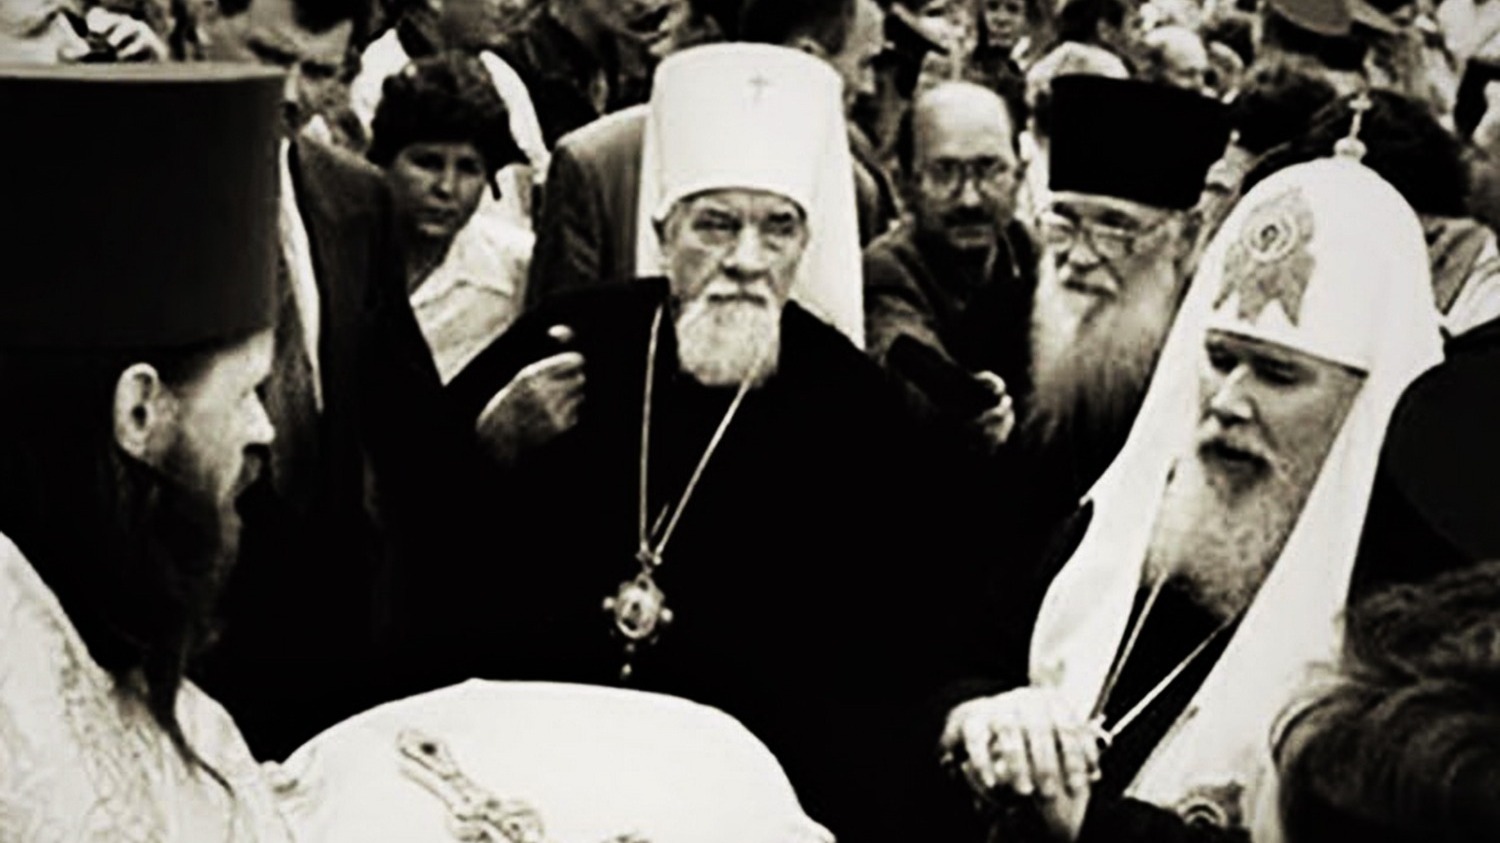 Митрополит Леонтий (слева) и патриарх Алексий